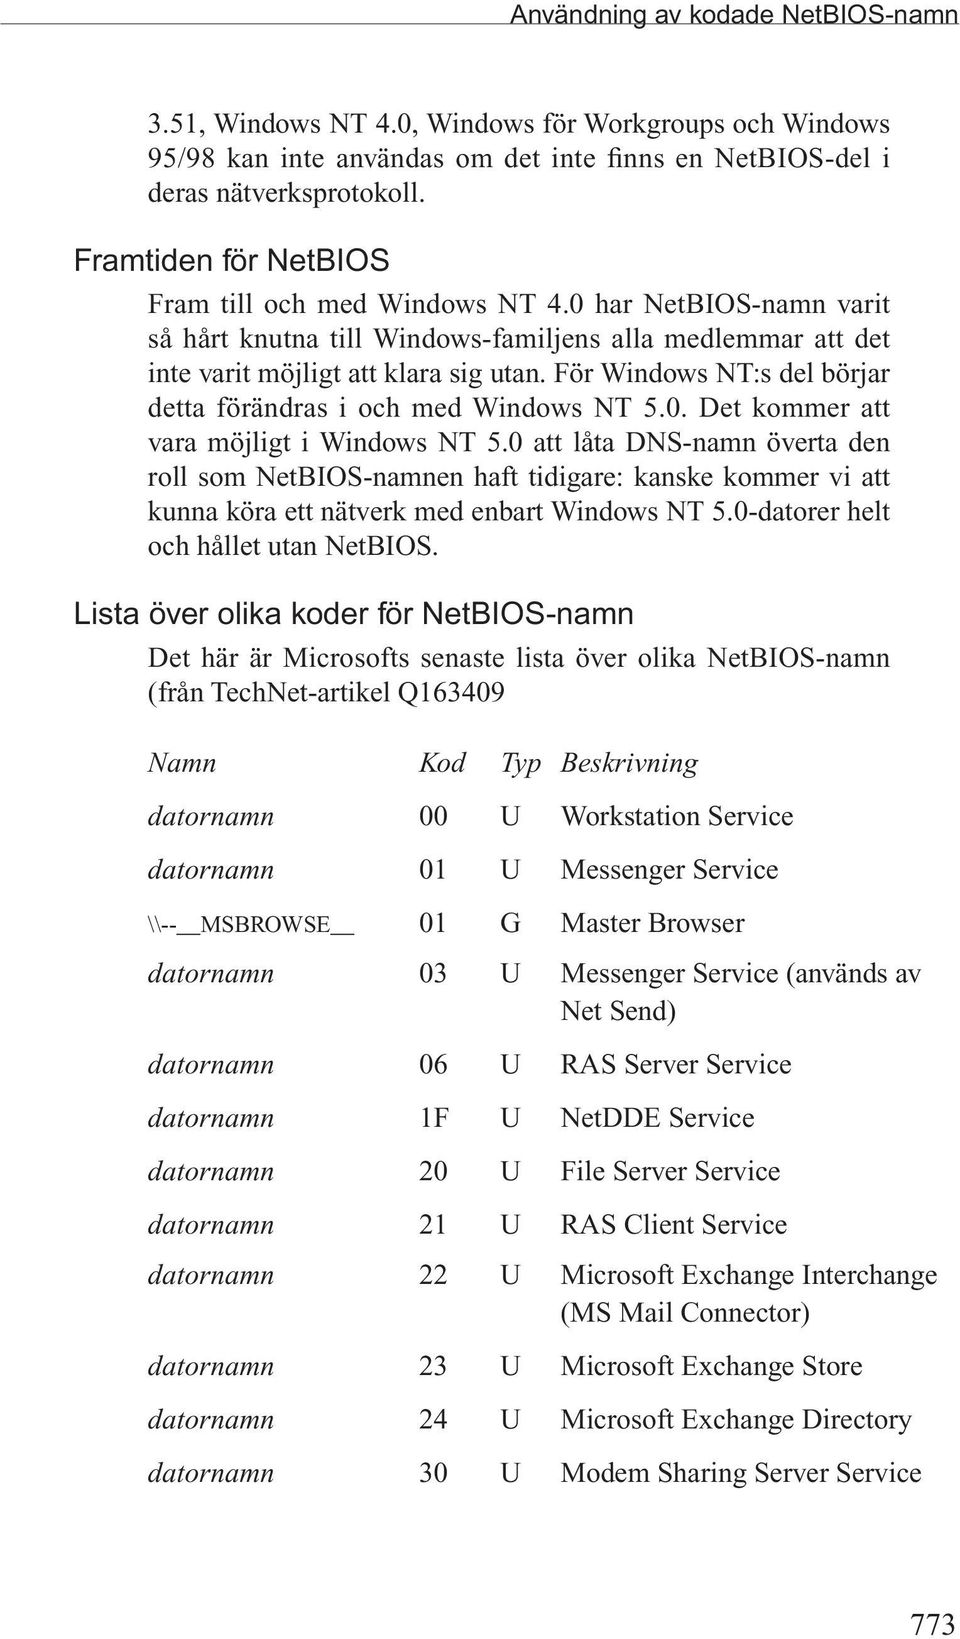 För Windows NT:s del börjar detta förändras i och med Windows NT 5.0. Det kommer att vara möjligt i Windows NT 5.